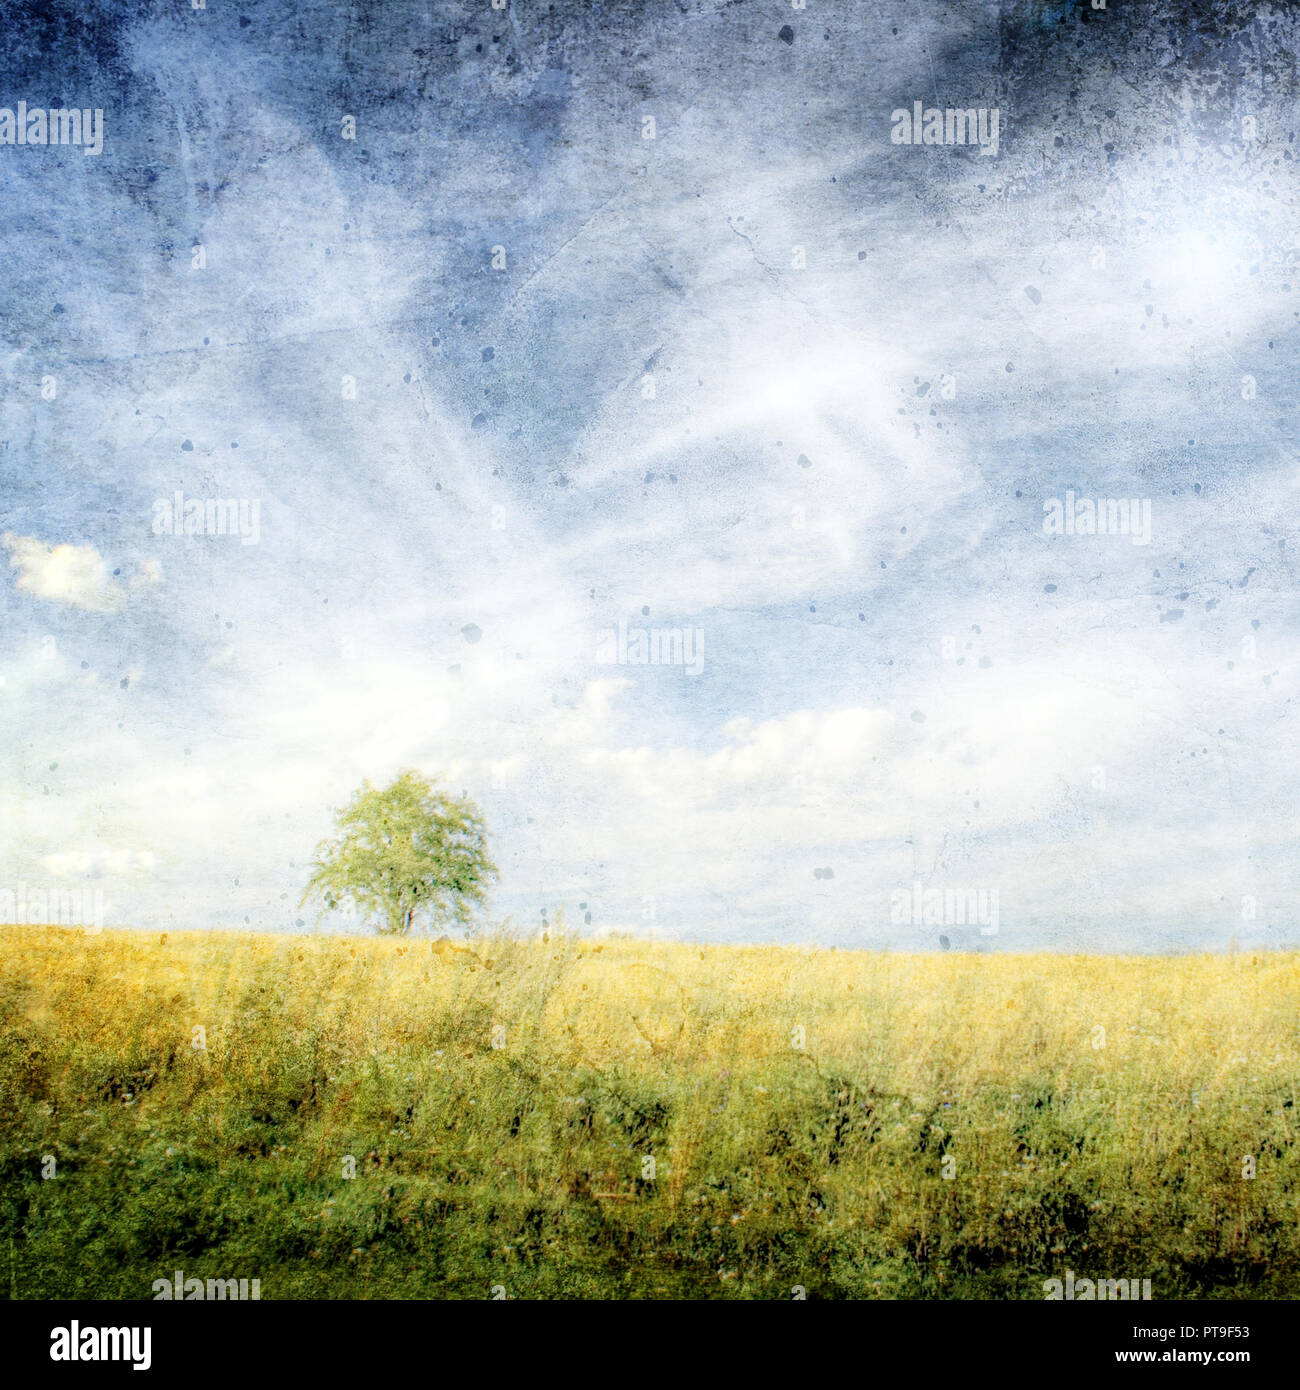 Sommer Landschaft - Weizenfeld und blauer Himmel mit Wolken - Vintage Style Stockfoto